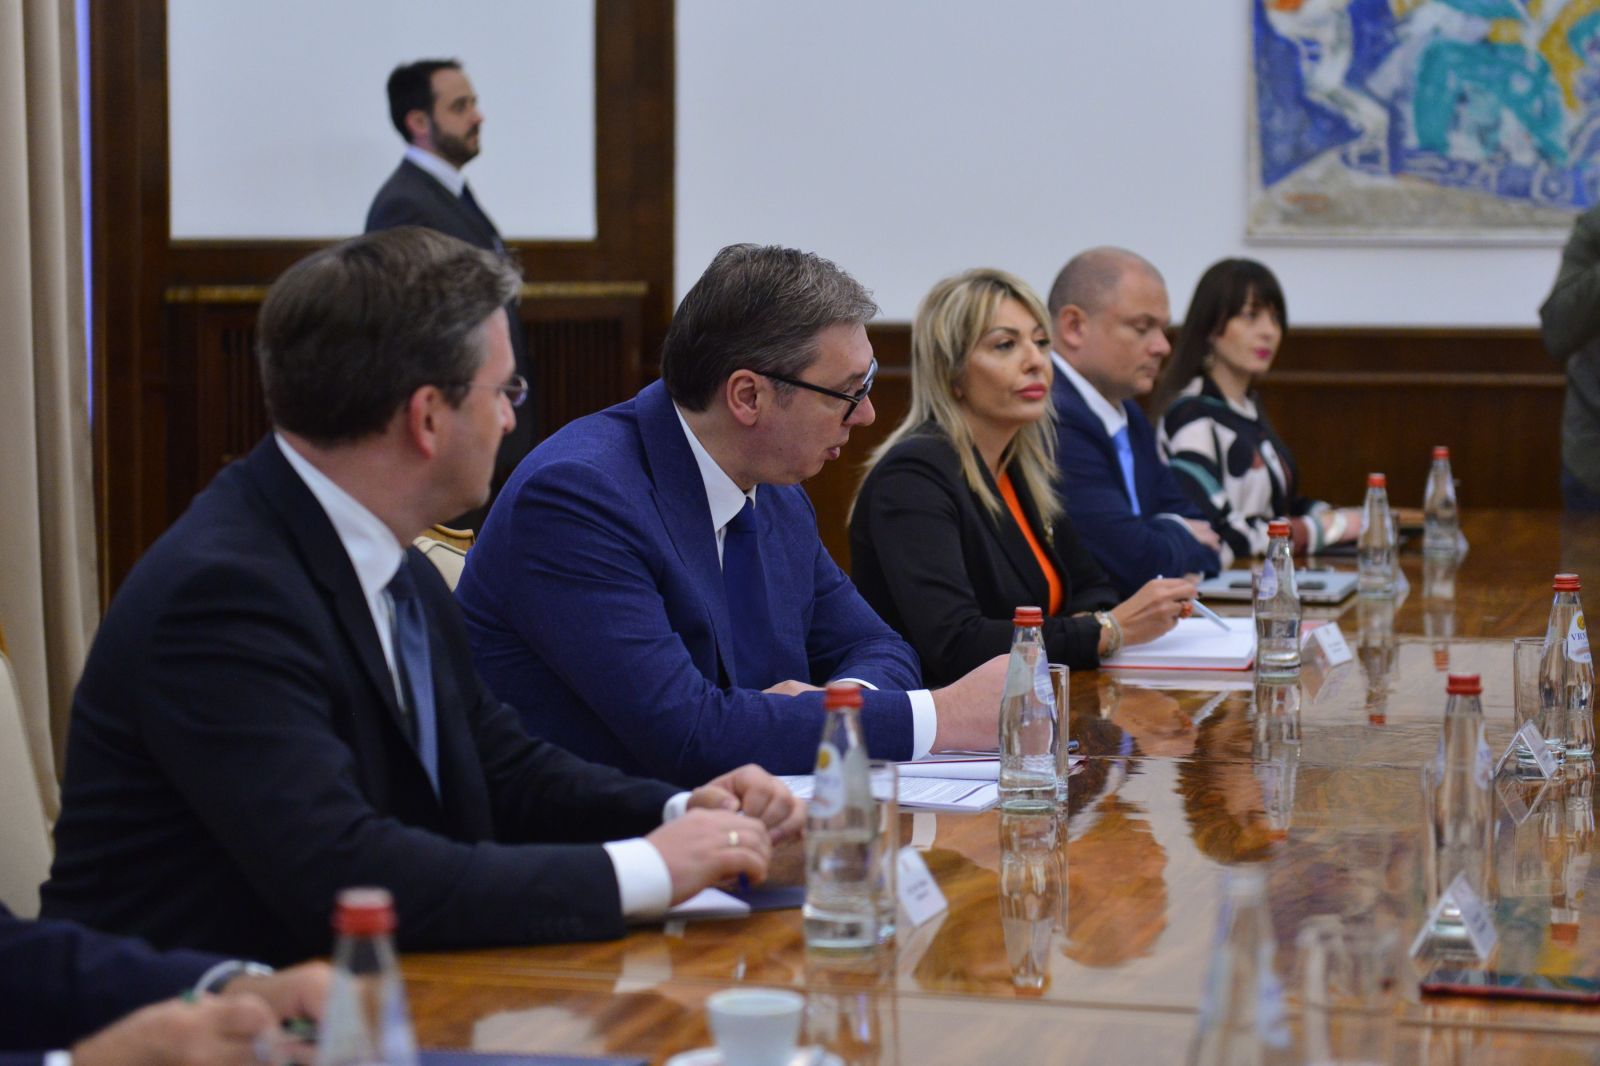 Ministar za evropske integracije Jadranka Joksimović  učestvovala je na sastanku predsednika Srbije Aleksandra Vučića sa saveznim ministrom za evropske i međunarodne poslove Republike Austrije Aleksanderom Šalenbergom.